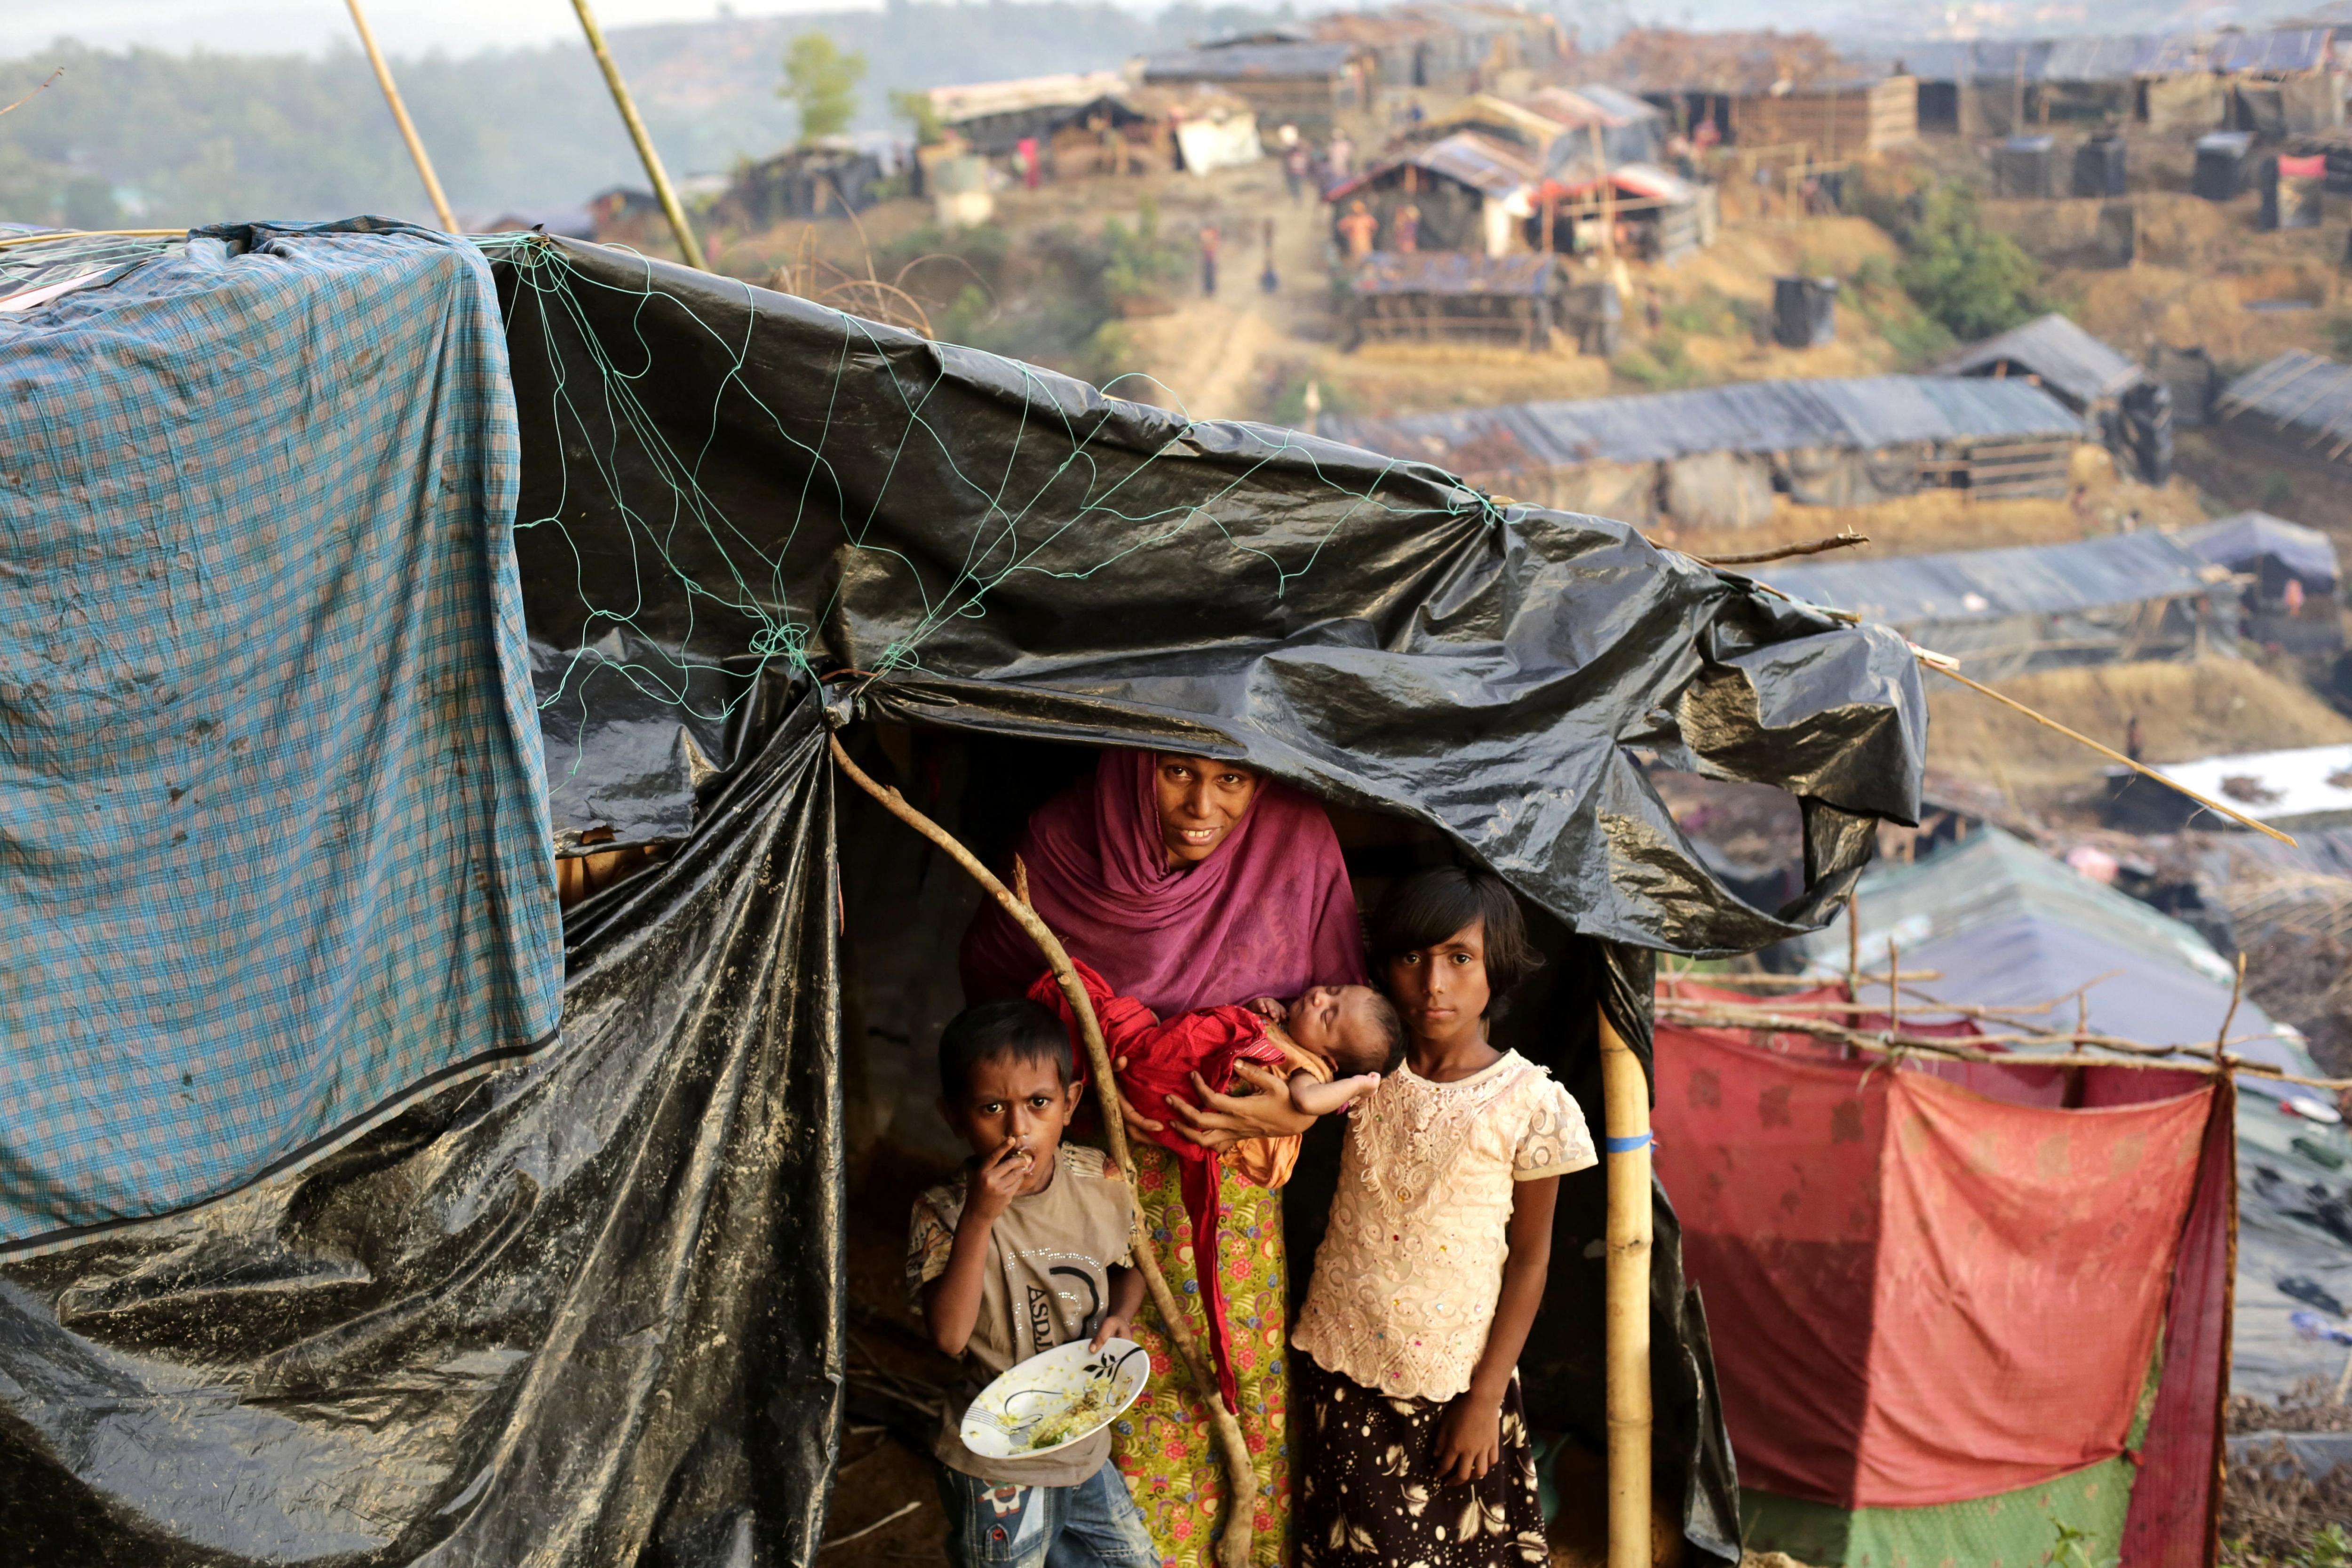 En septiembre pasado, la ONU publicó un informe sobre los abusos realizados por parte del Ejército de Myanmar durante décadas.